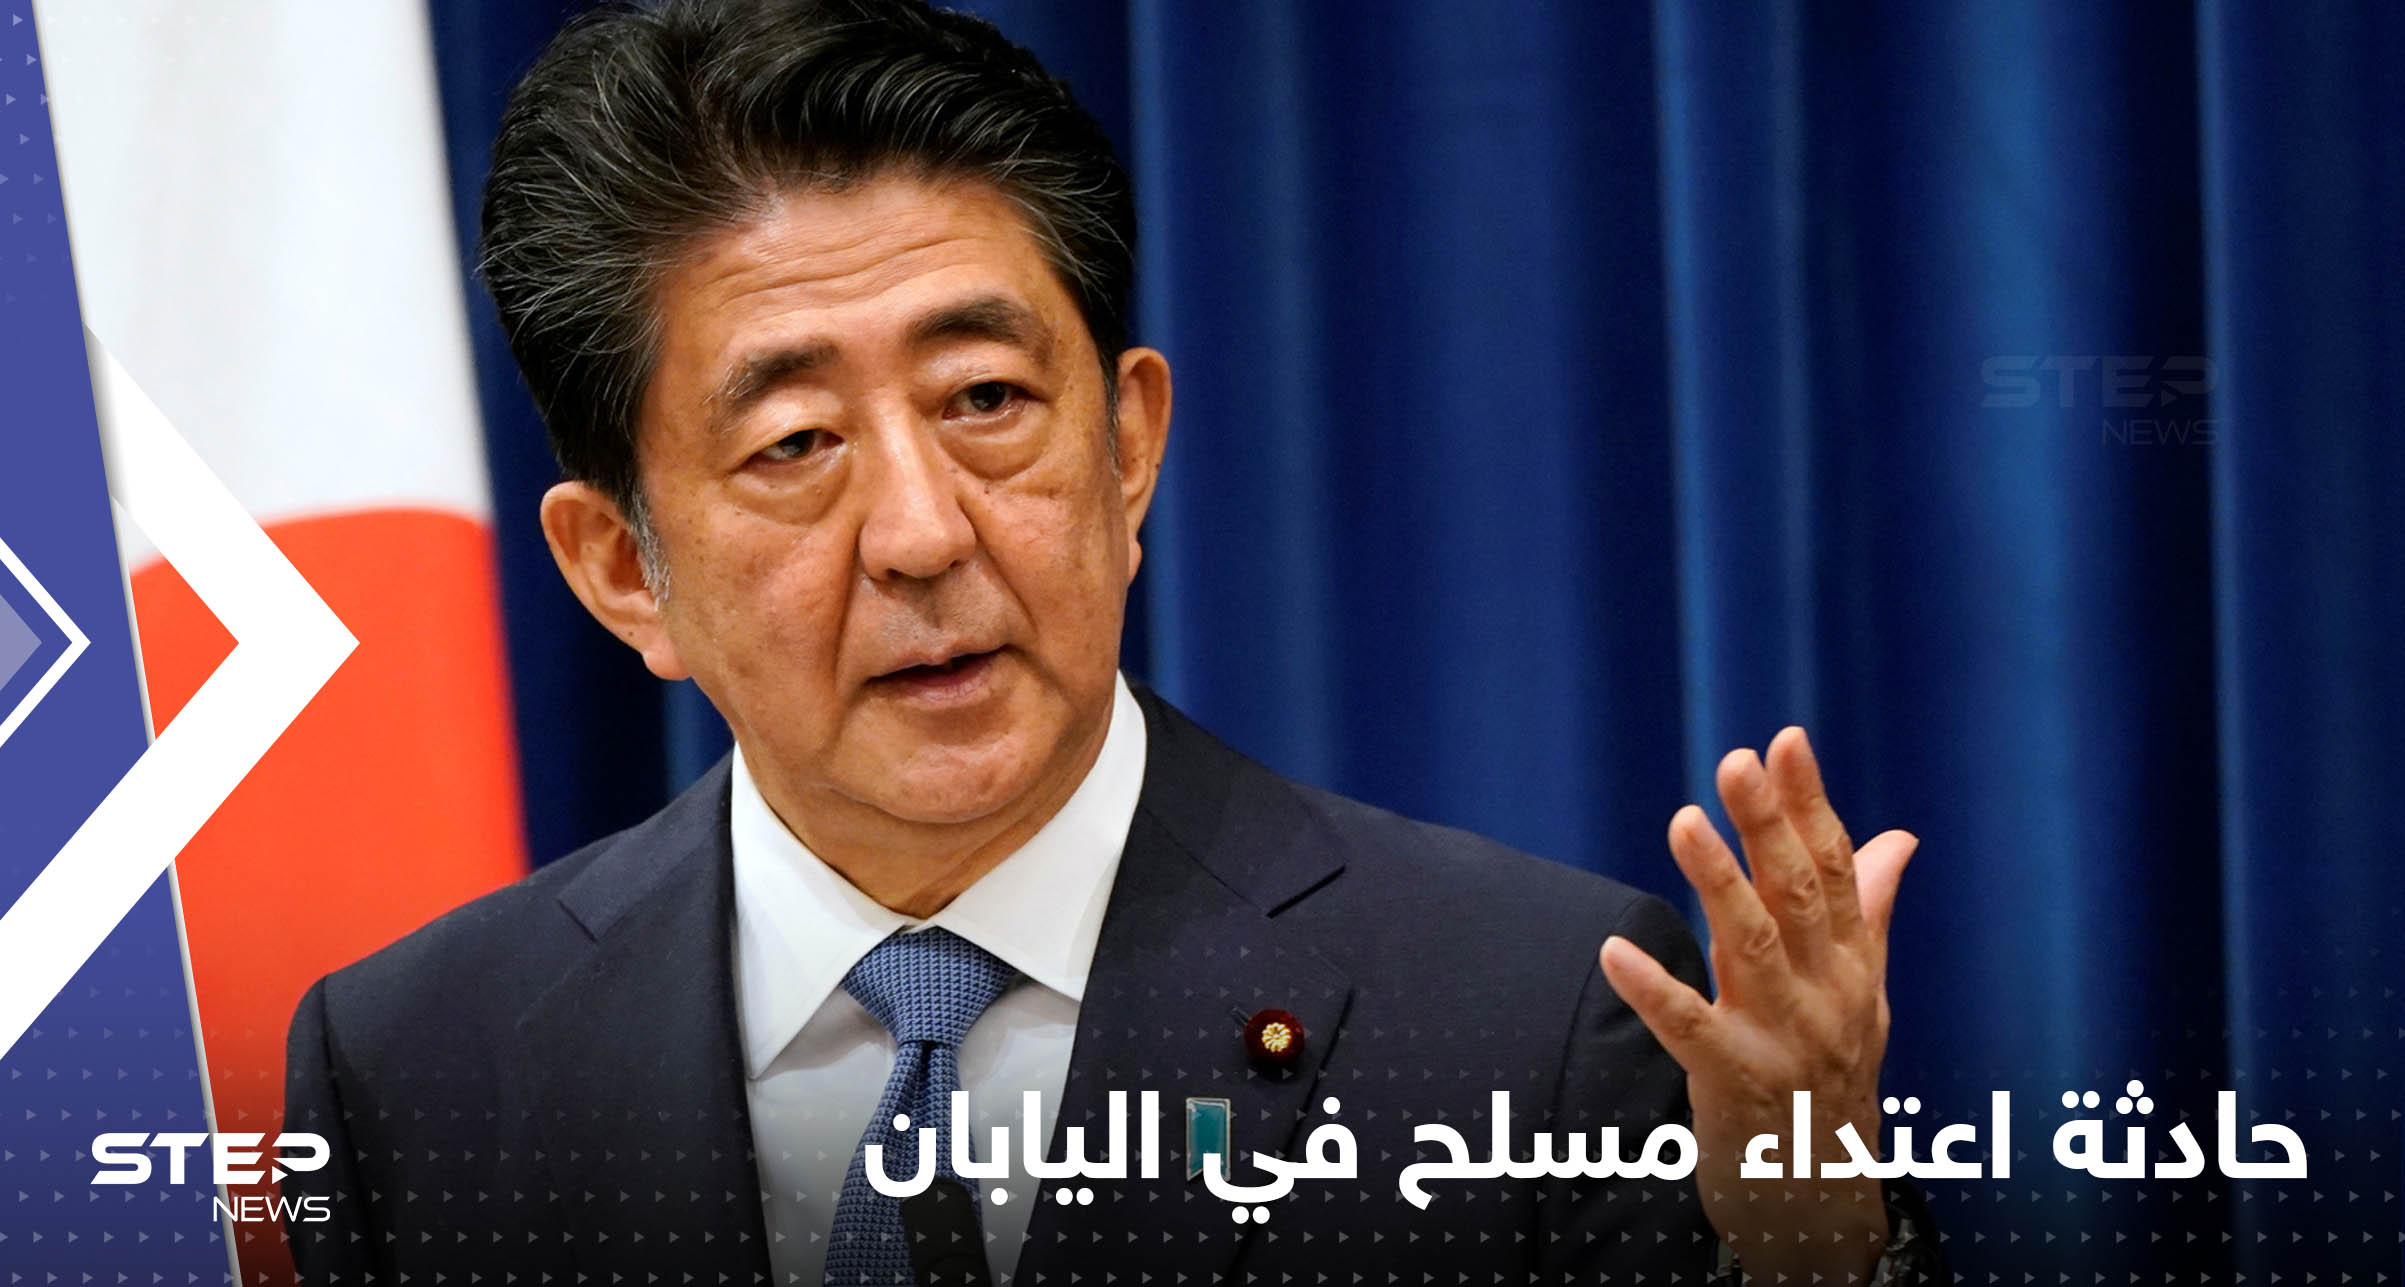 شاهد|| حالته خطرة.. اعتداء بالرصاص على رئيس وزراء اليابان السابق